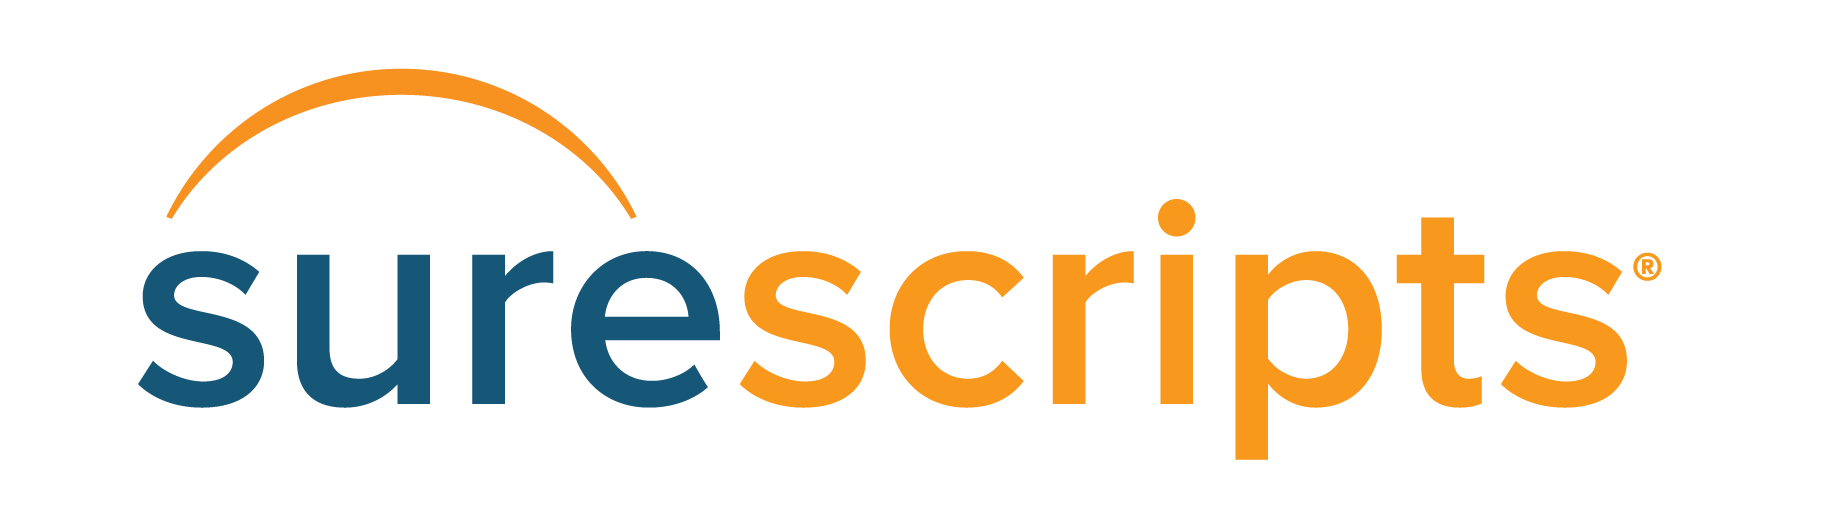 Surescripts Logo - Surescripts